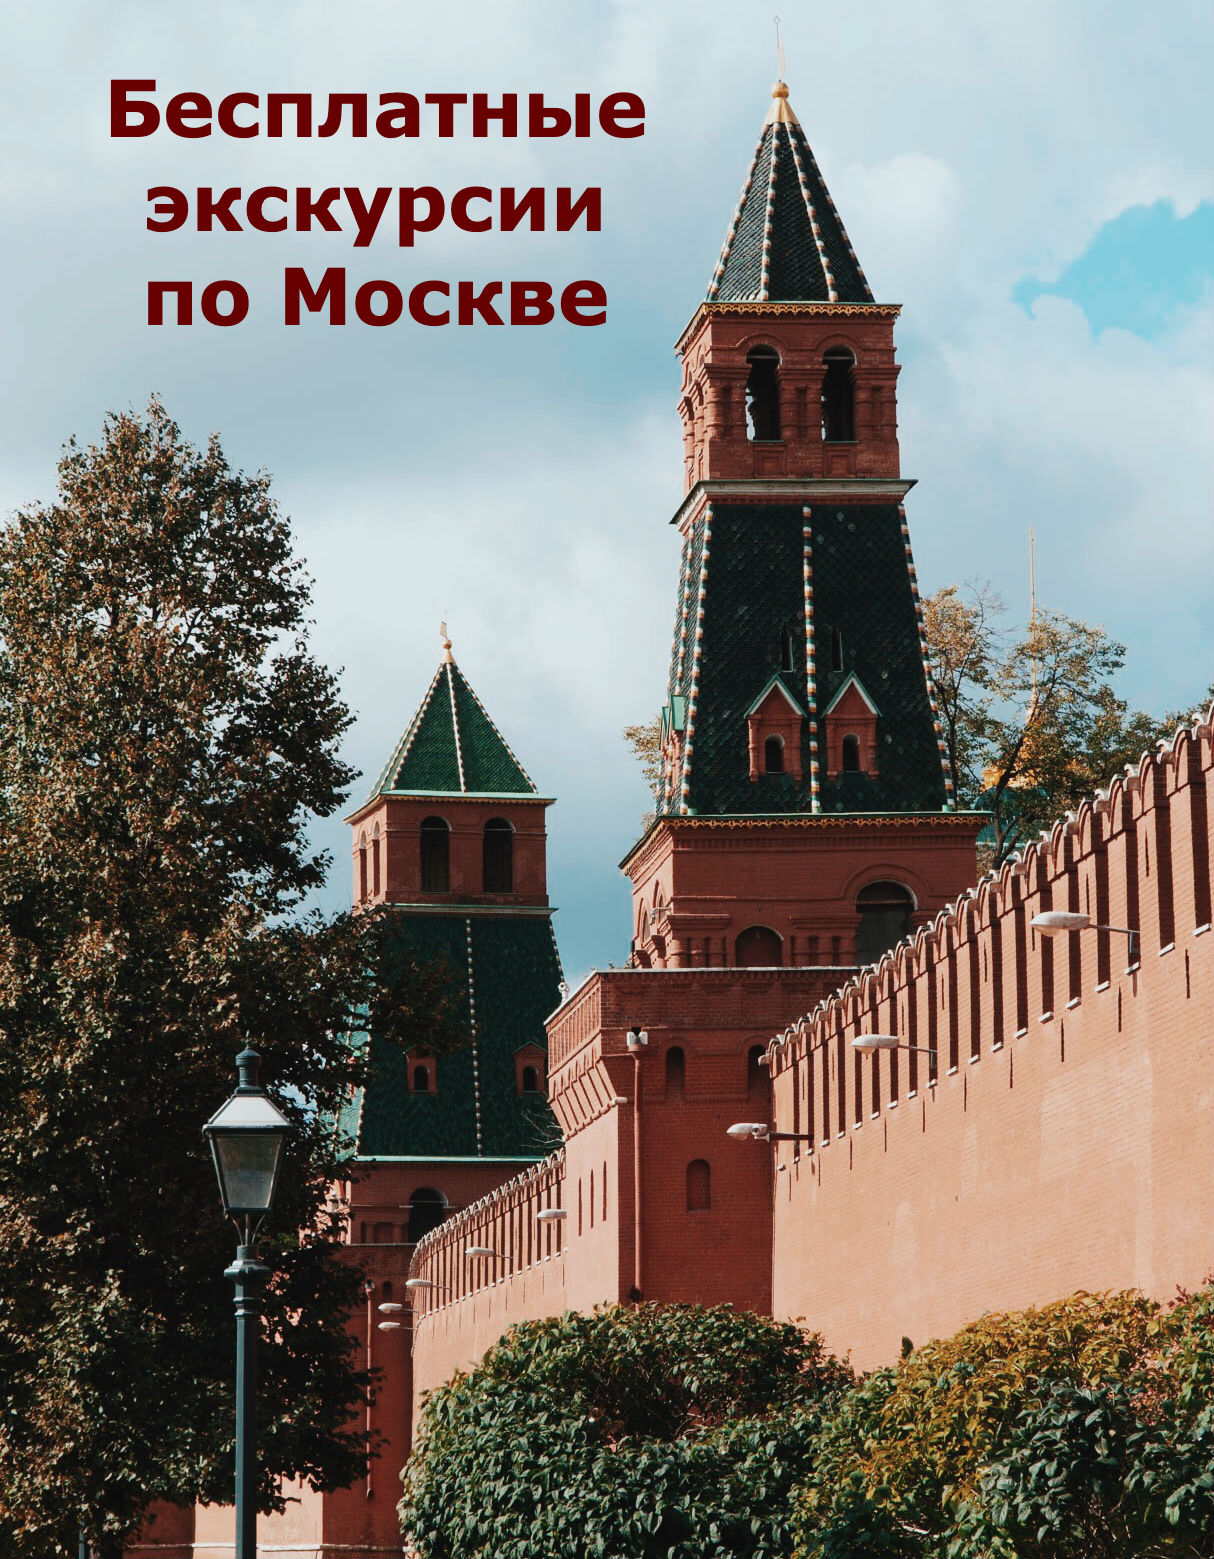 Бесплатные экскурсии по Москве